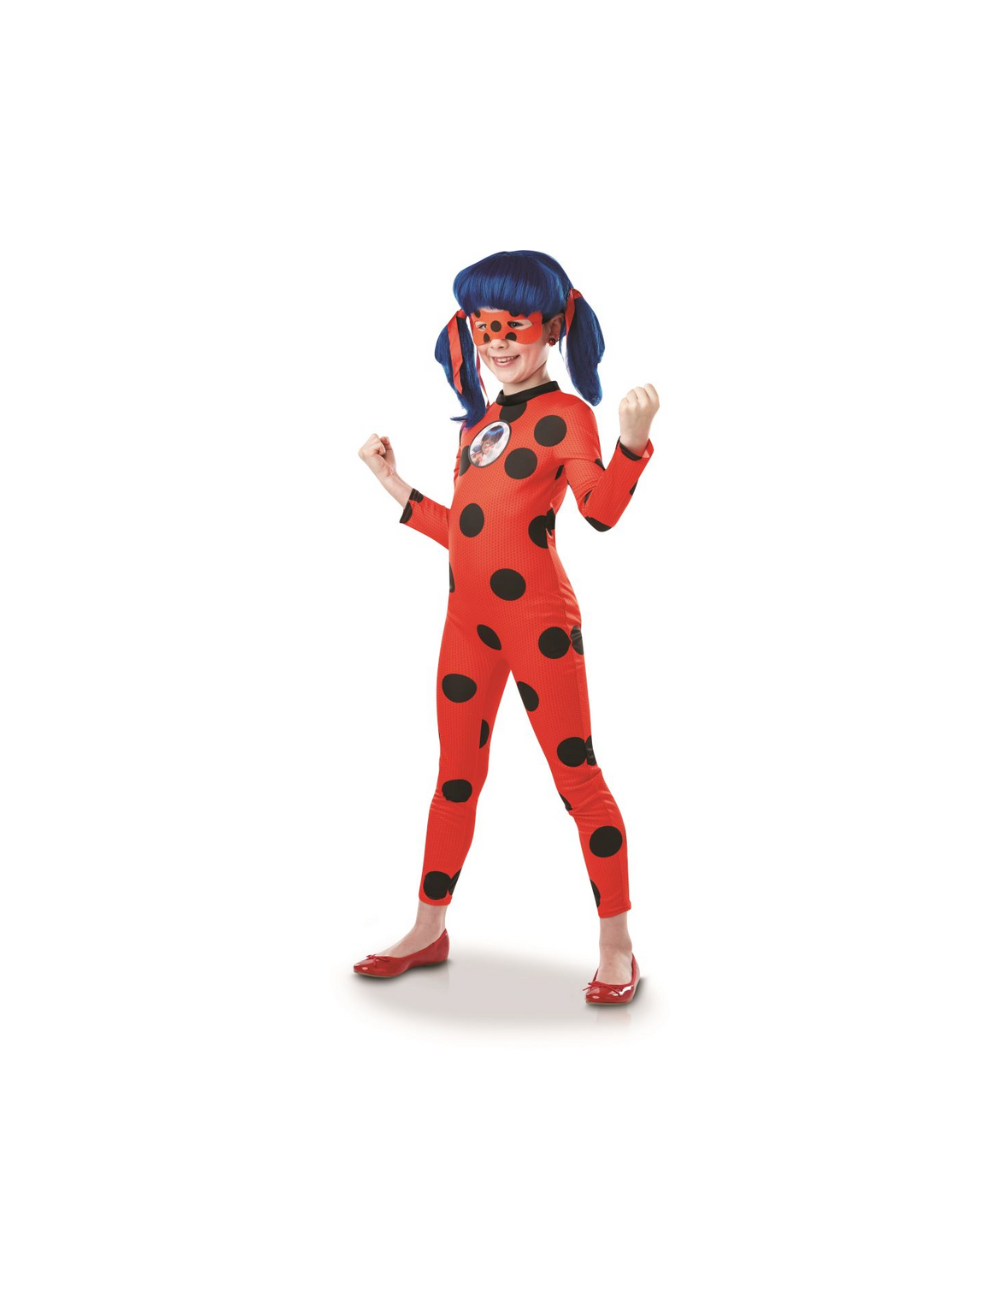 LadyBug costume with wig